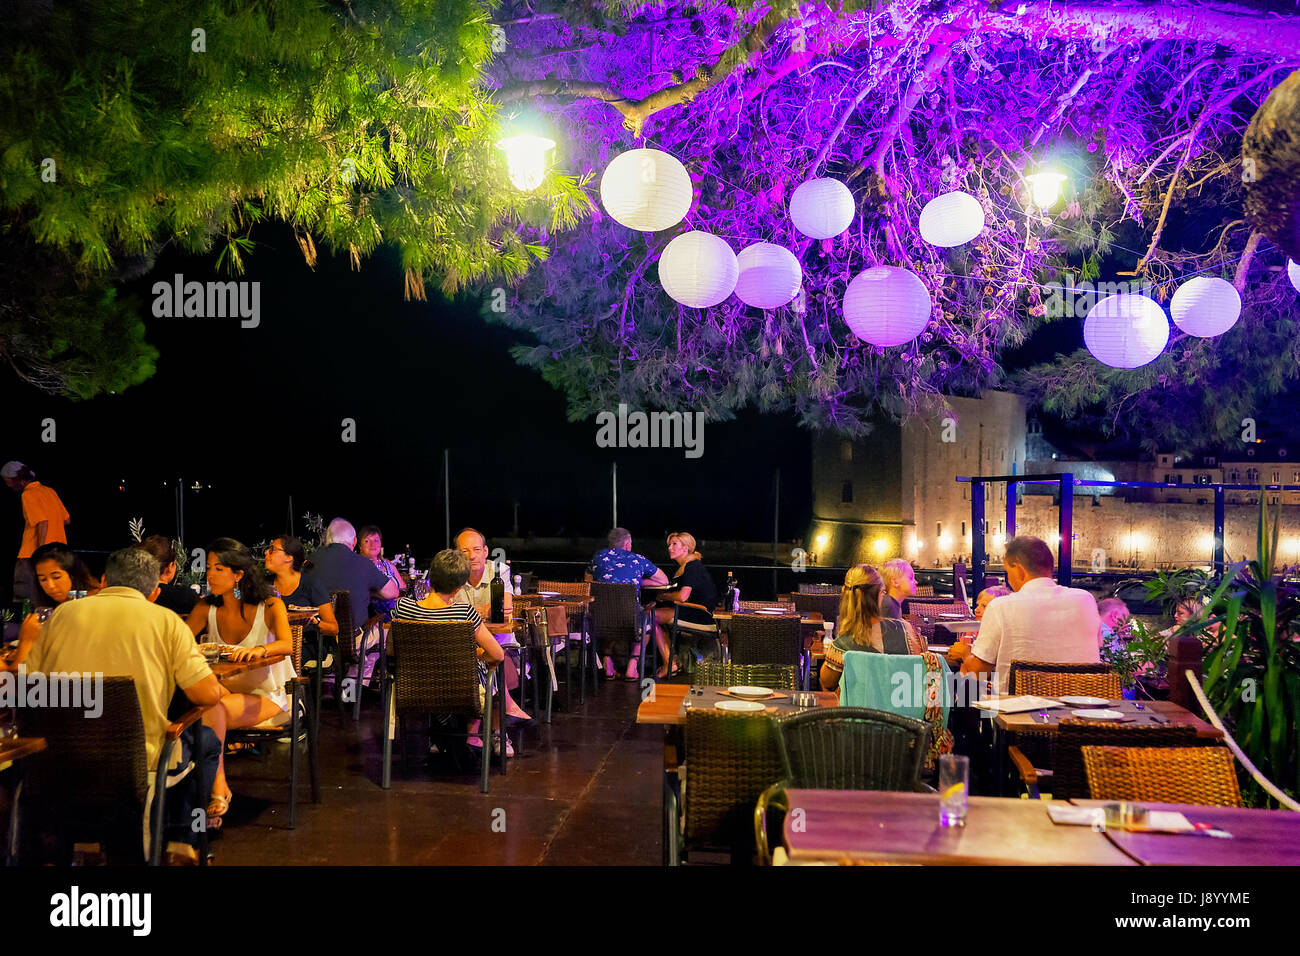 Dubrovnik, Kroatien - 20. August 2016: Menschen im Straßencafé mit Laterne beleuchtet in der Nacht in Dubrovnik, Kroatien Stockfoto